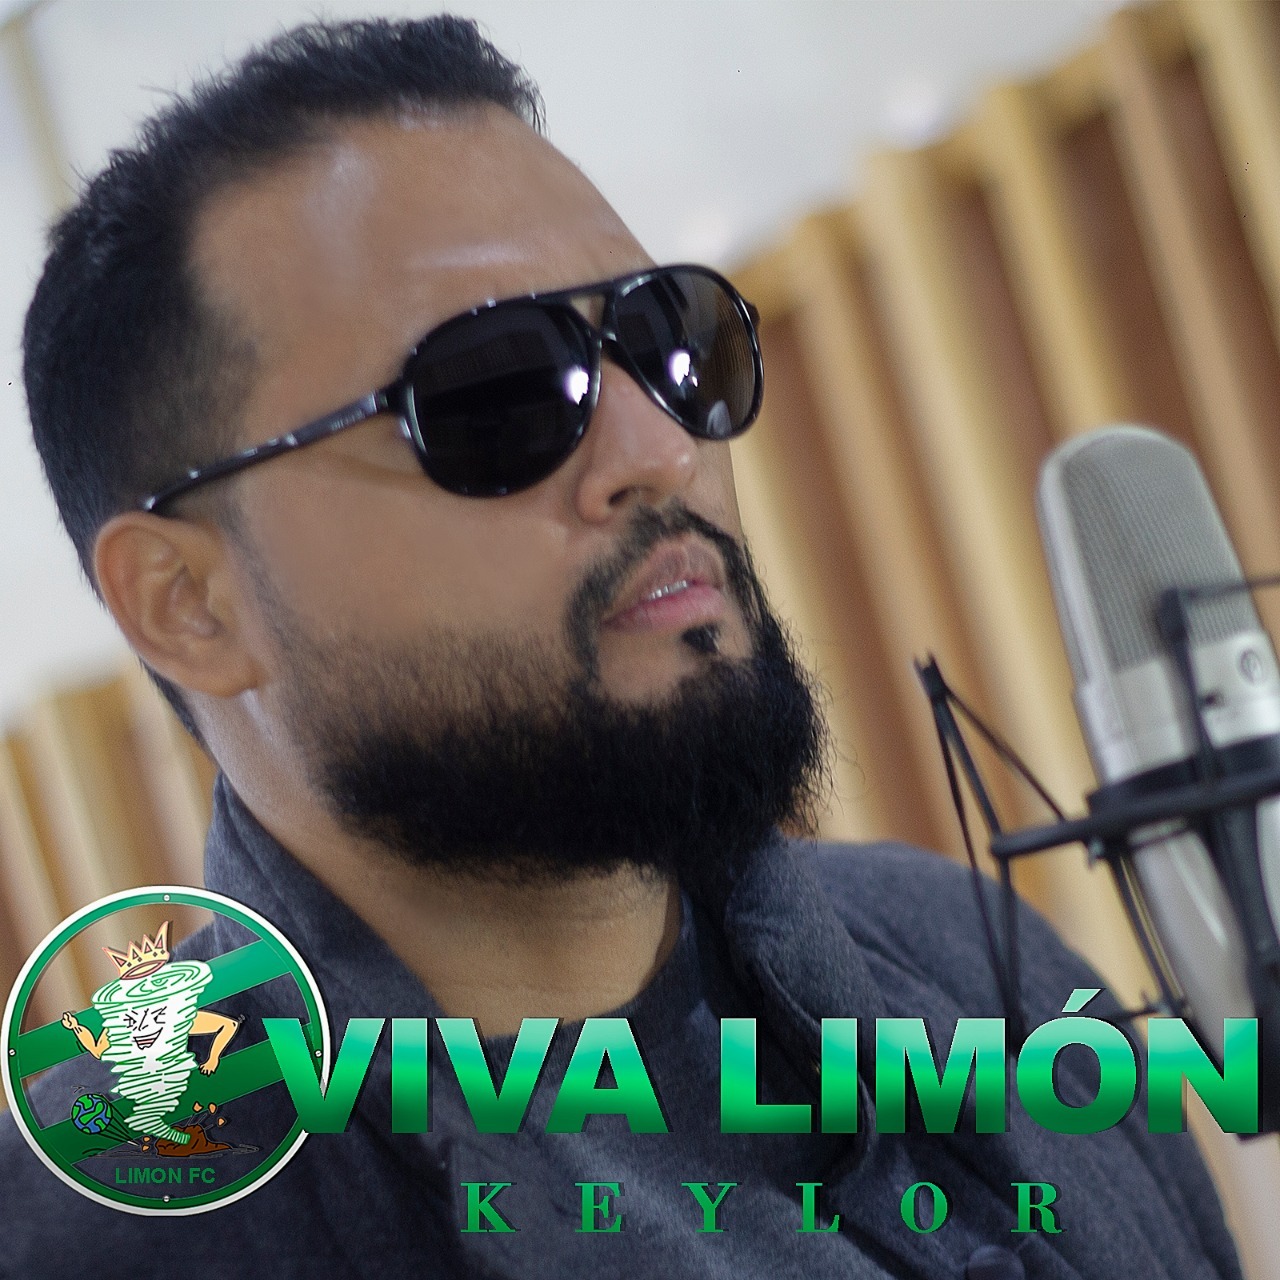 Limón FC estrena nueva canción. (Letra, audio y video en la nota)